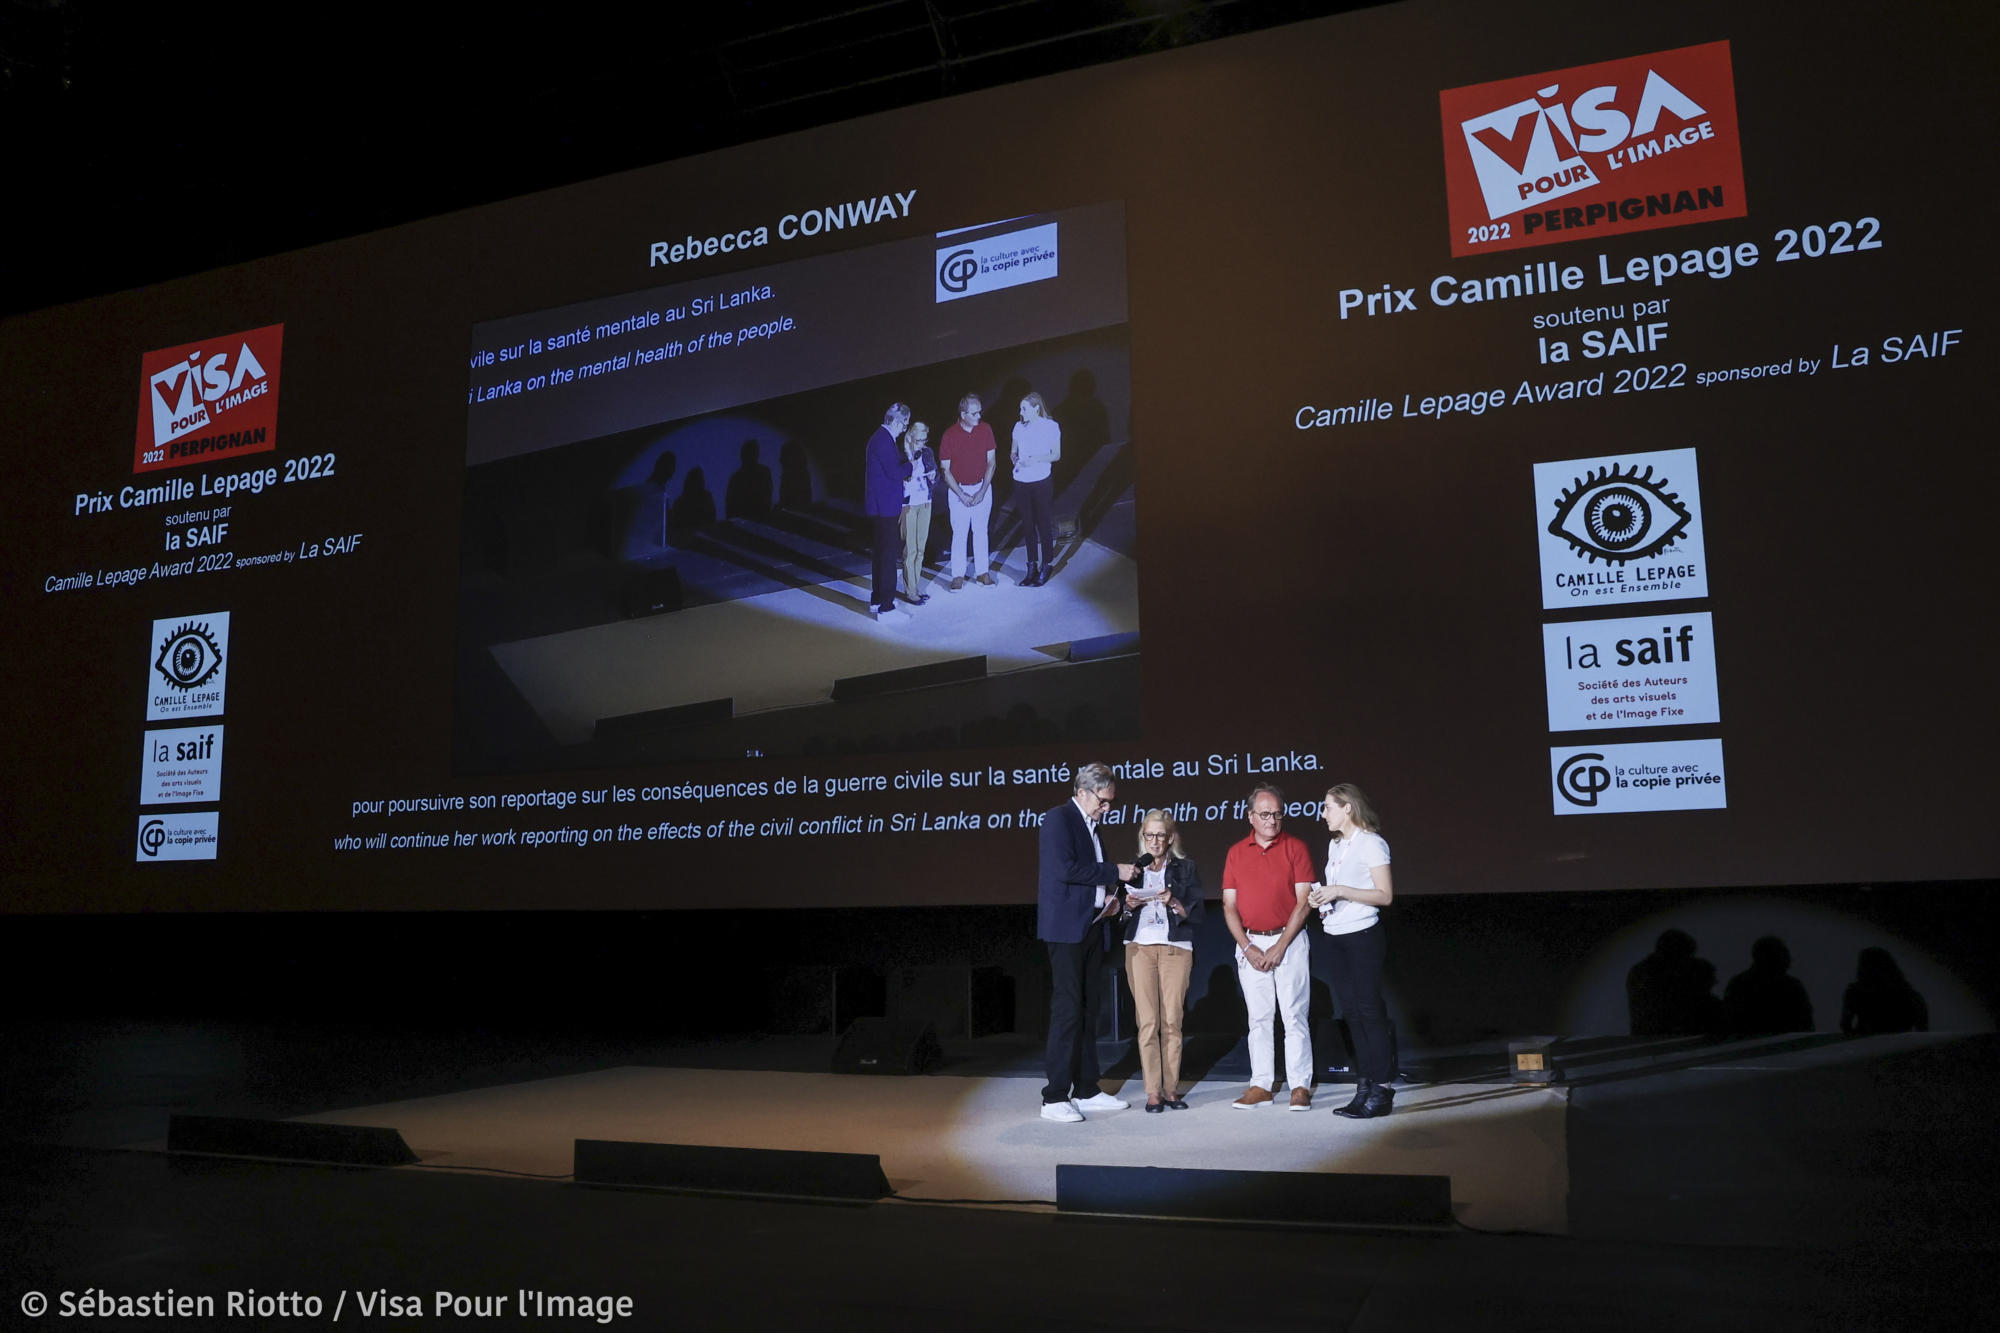 Visa pour l’image 2022 : Rebecca Conway, lauréate du Prix « Camille Lepage » 2022